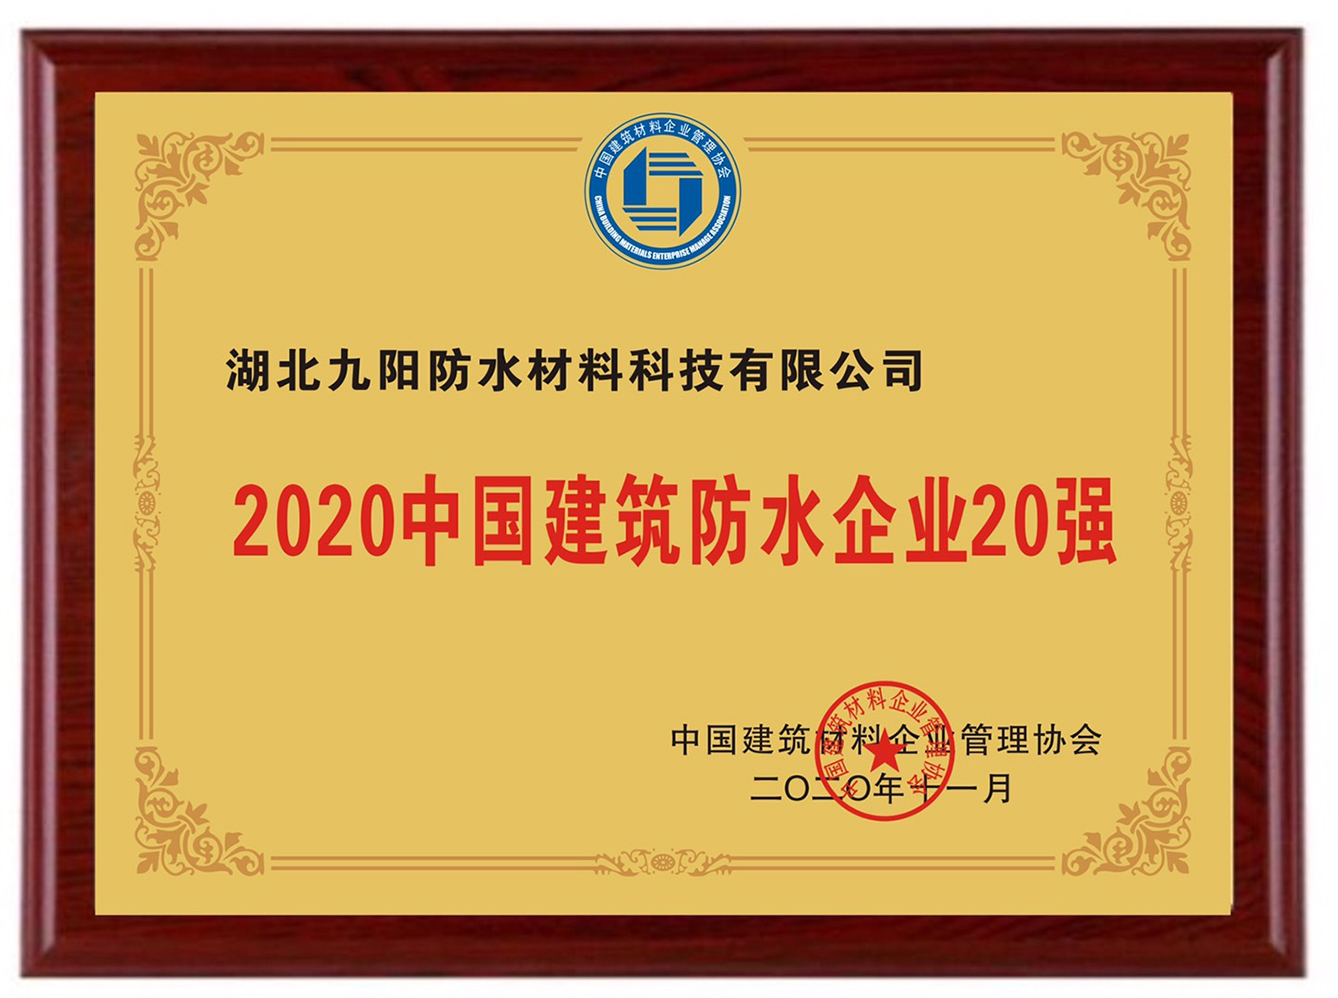  202011082020中国建筑防水企业20强